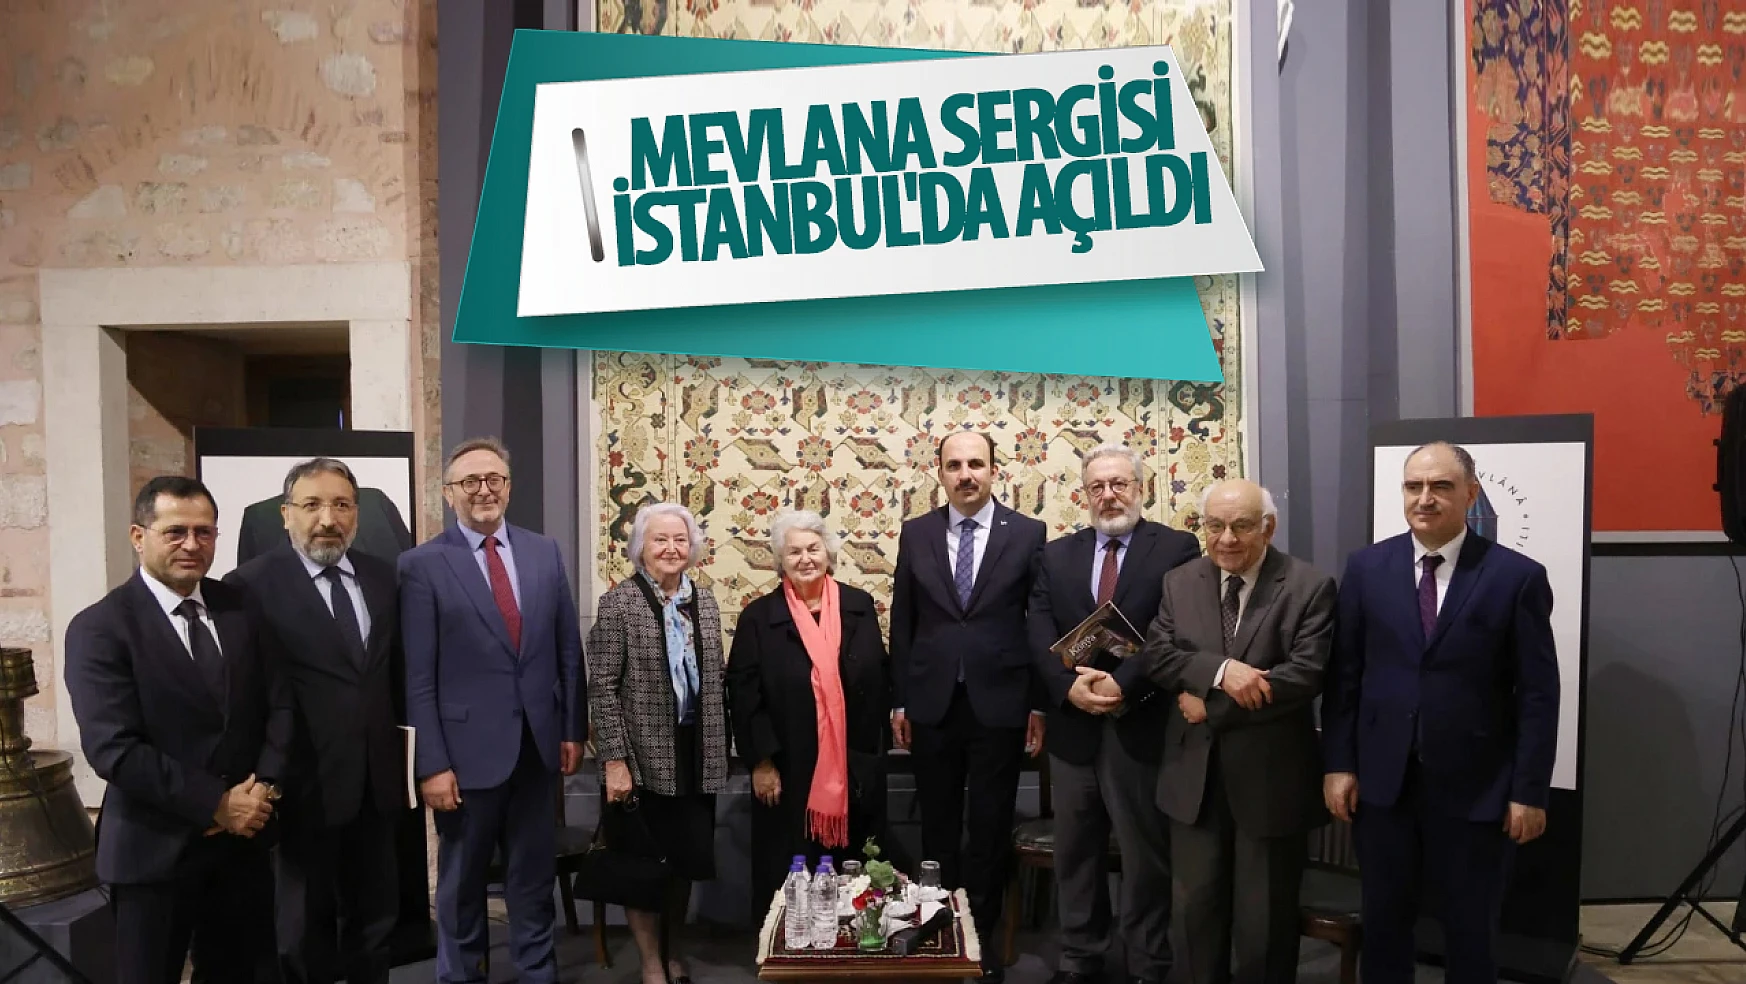 Mevlana sergisi İstanbul'da açıldı